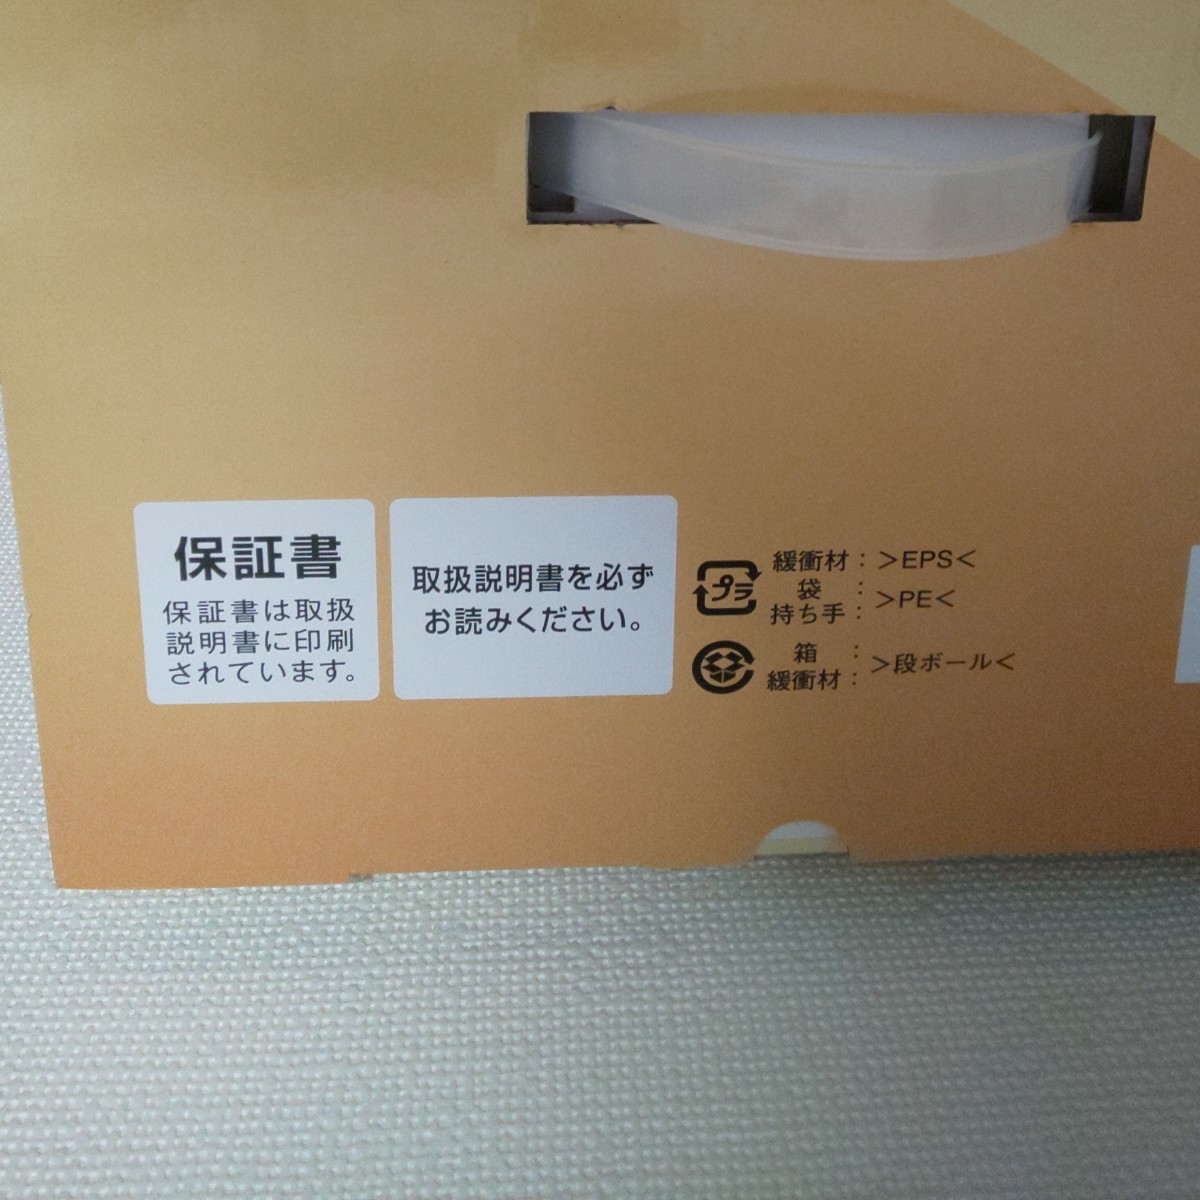 【新品保証書付】CCP シーシーピー 電気圧力鍋 (1.8L) ホワイト BD-PC71-WH